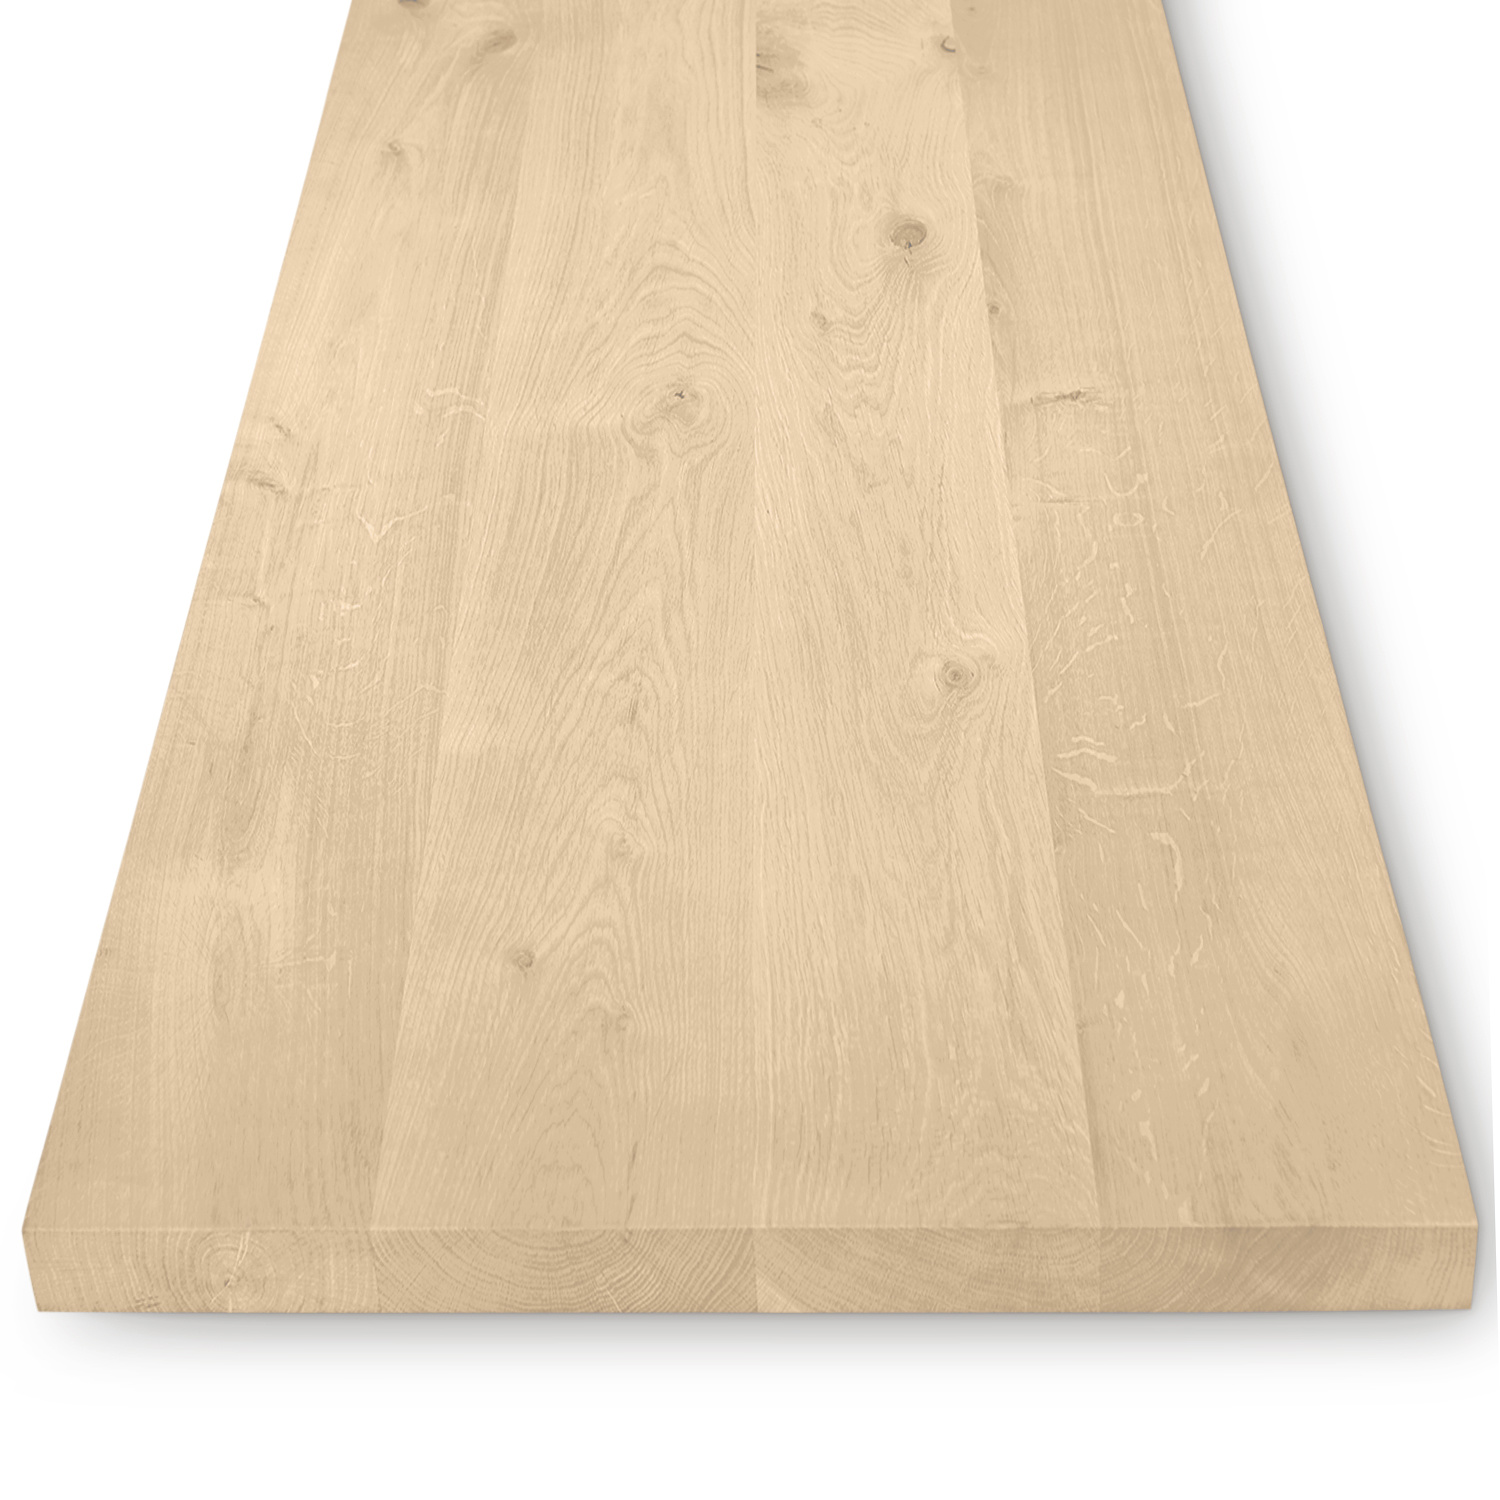  Eiken (horeca) tafelblad rechthoekig - 4 cm dik (massief) - diverse afmetingen - extra rustiek Europees eikenhout - Diverse afmetingen - verlijmd kd 10-12% - optioneel geborsteld en V-groeven